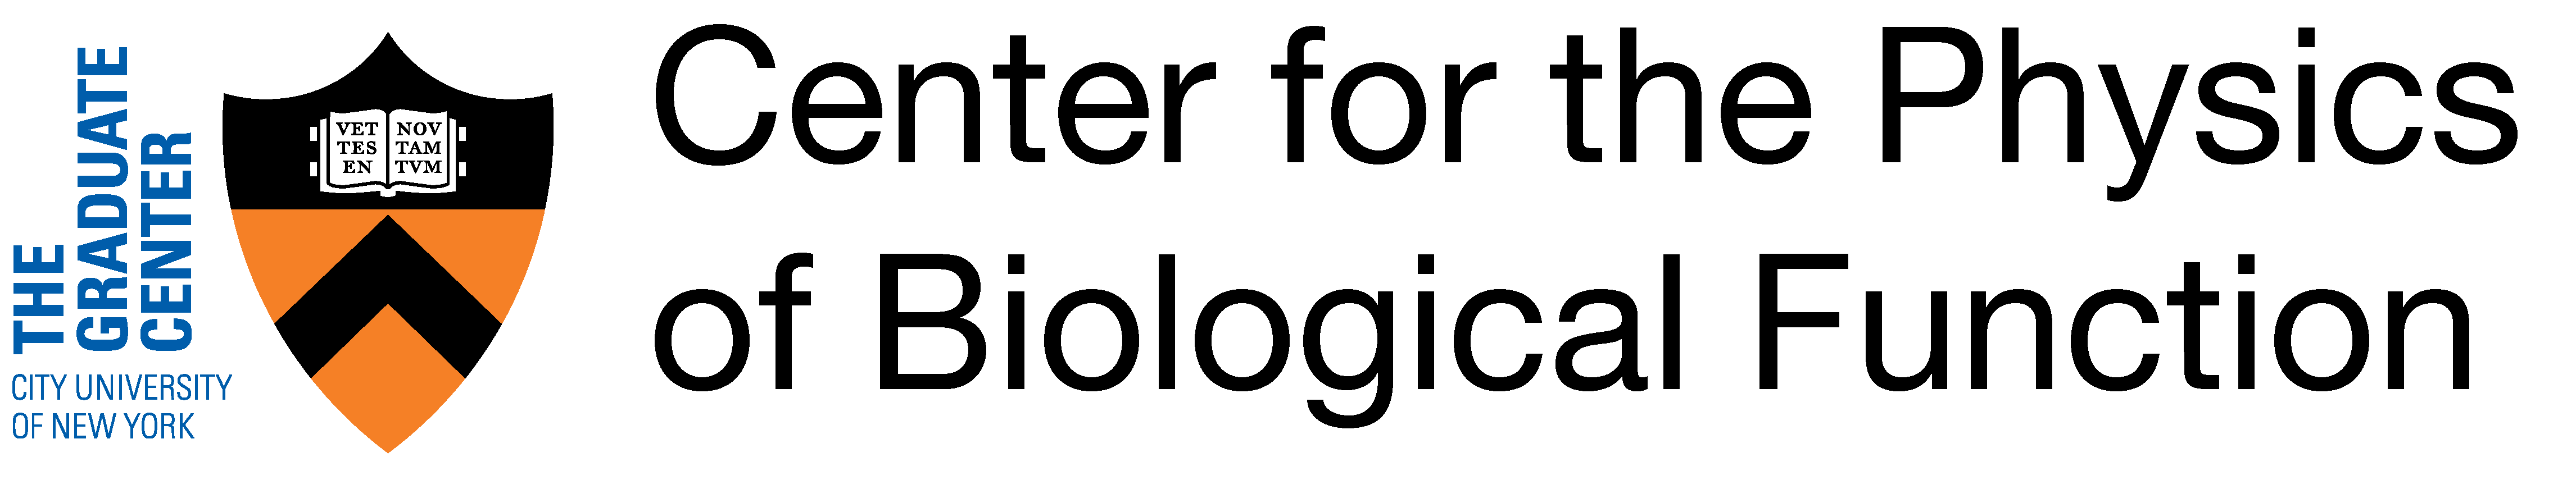 cuyn logo